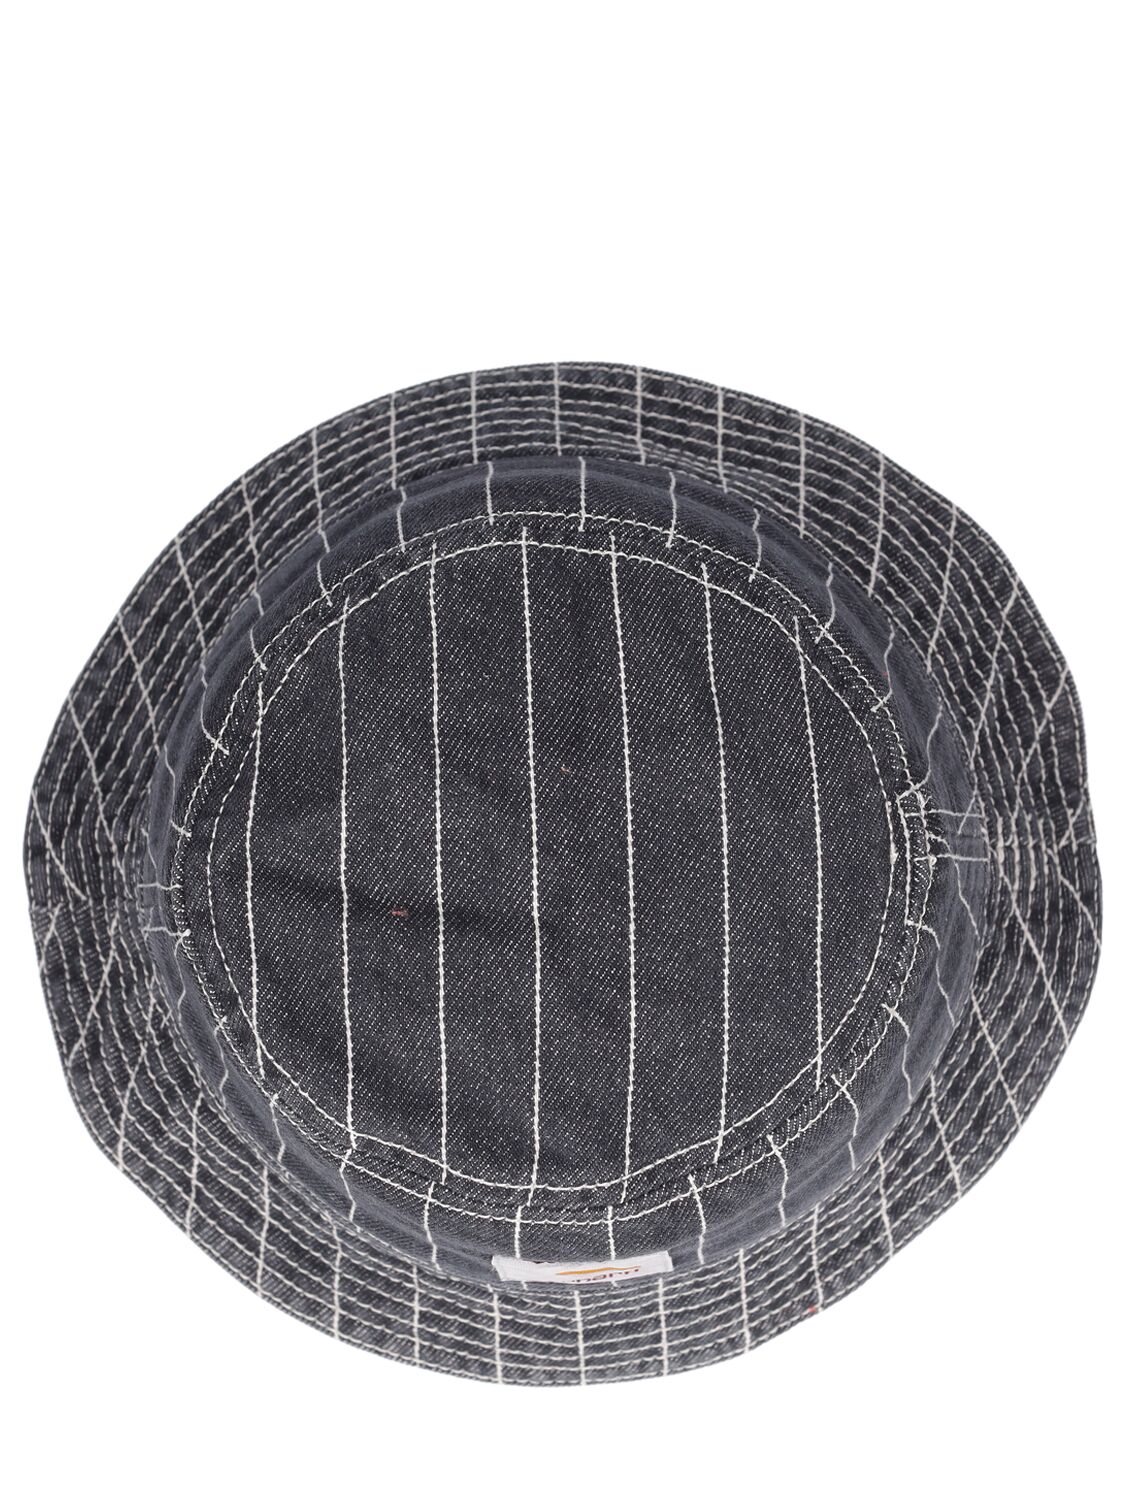 Shop Carhartt Orlean Bucket Hat In Black,white